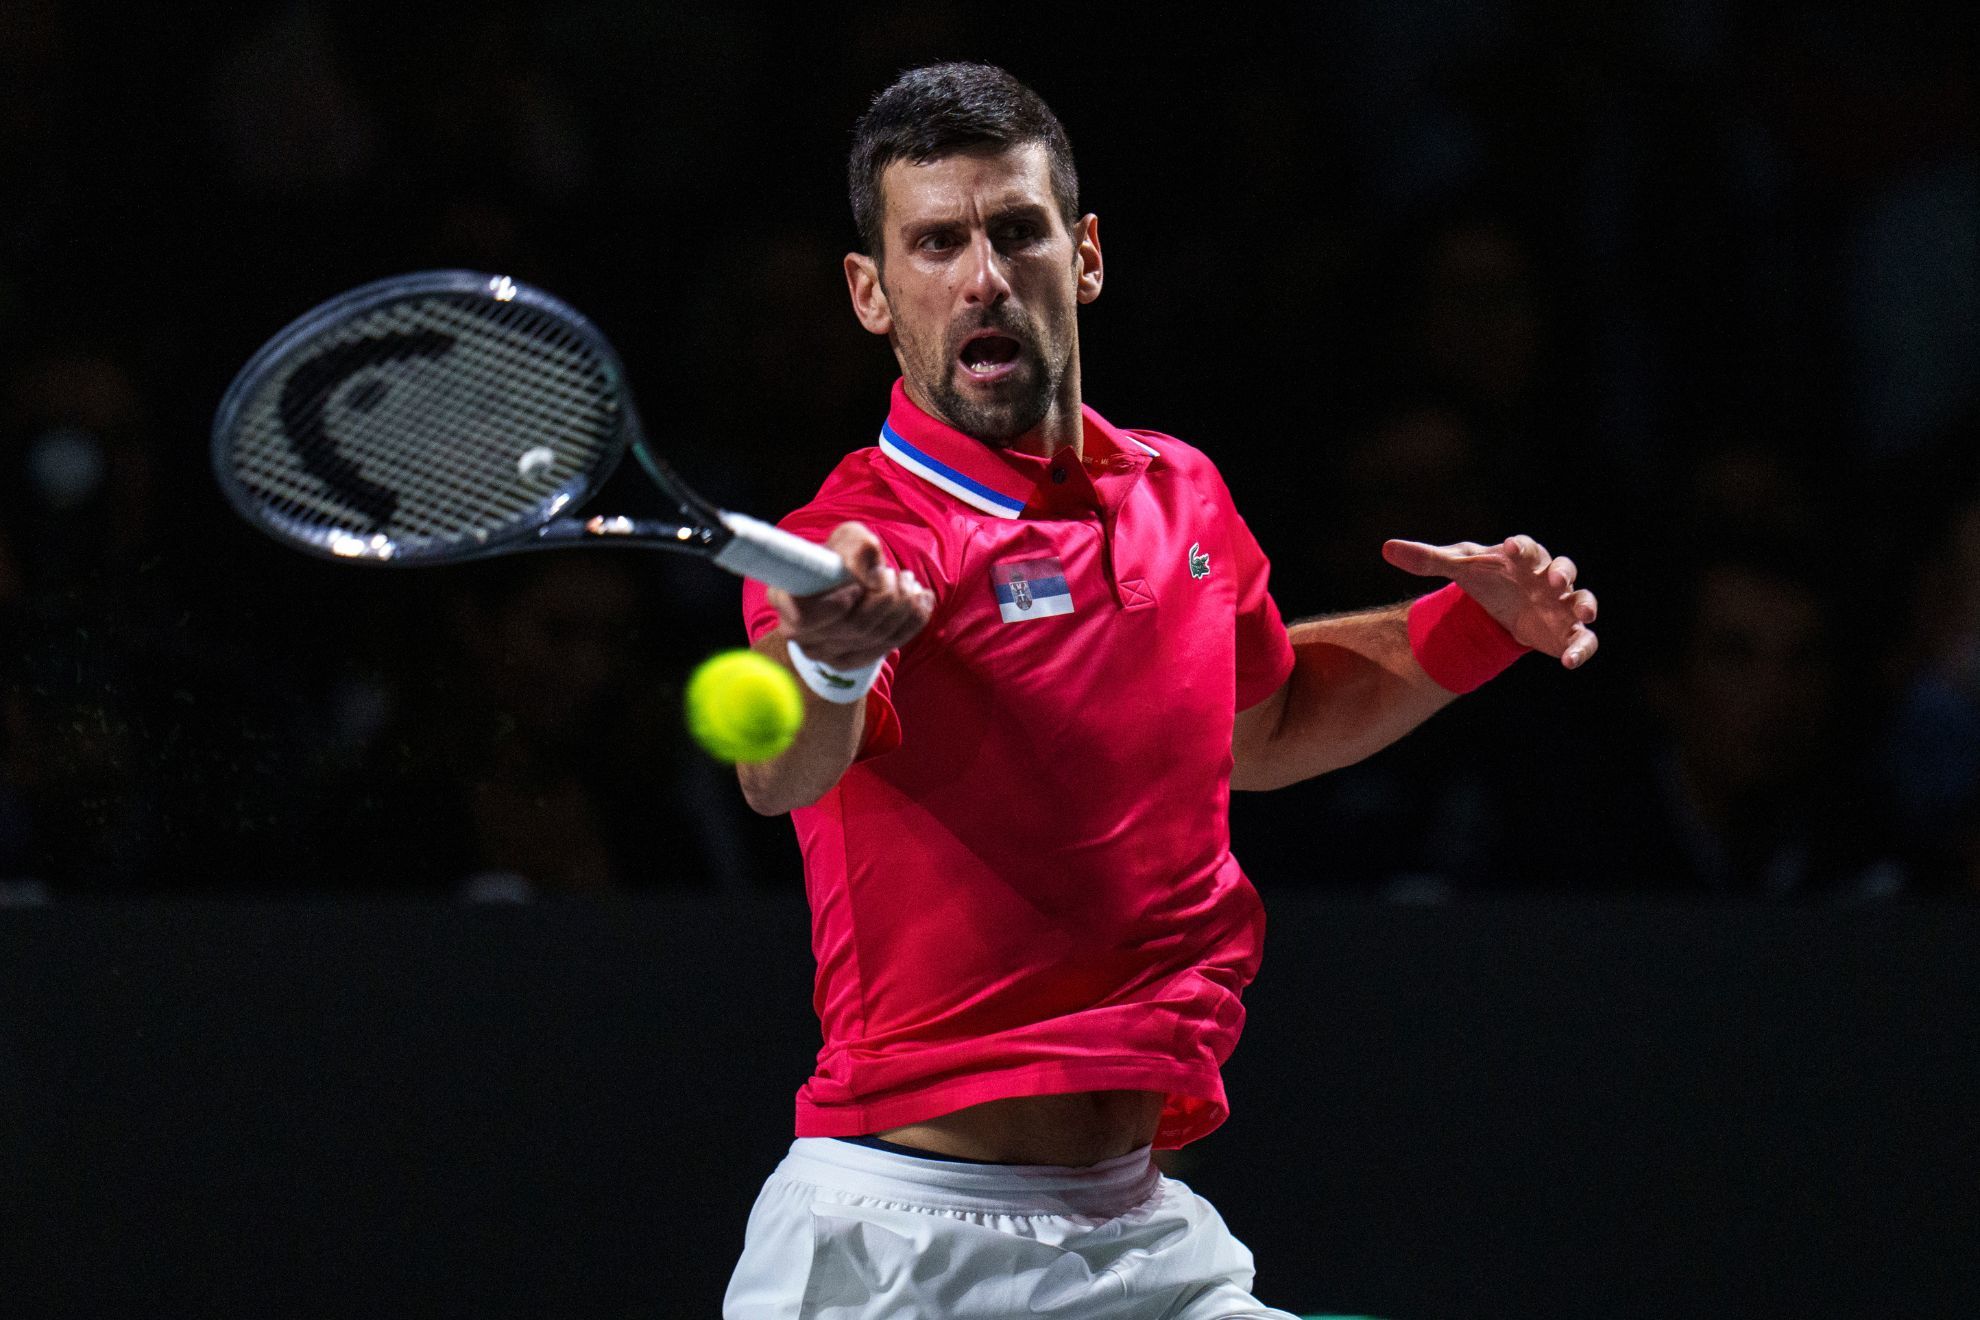 Novak Djokovic returns the ball against Jannik Sinner